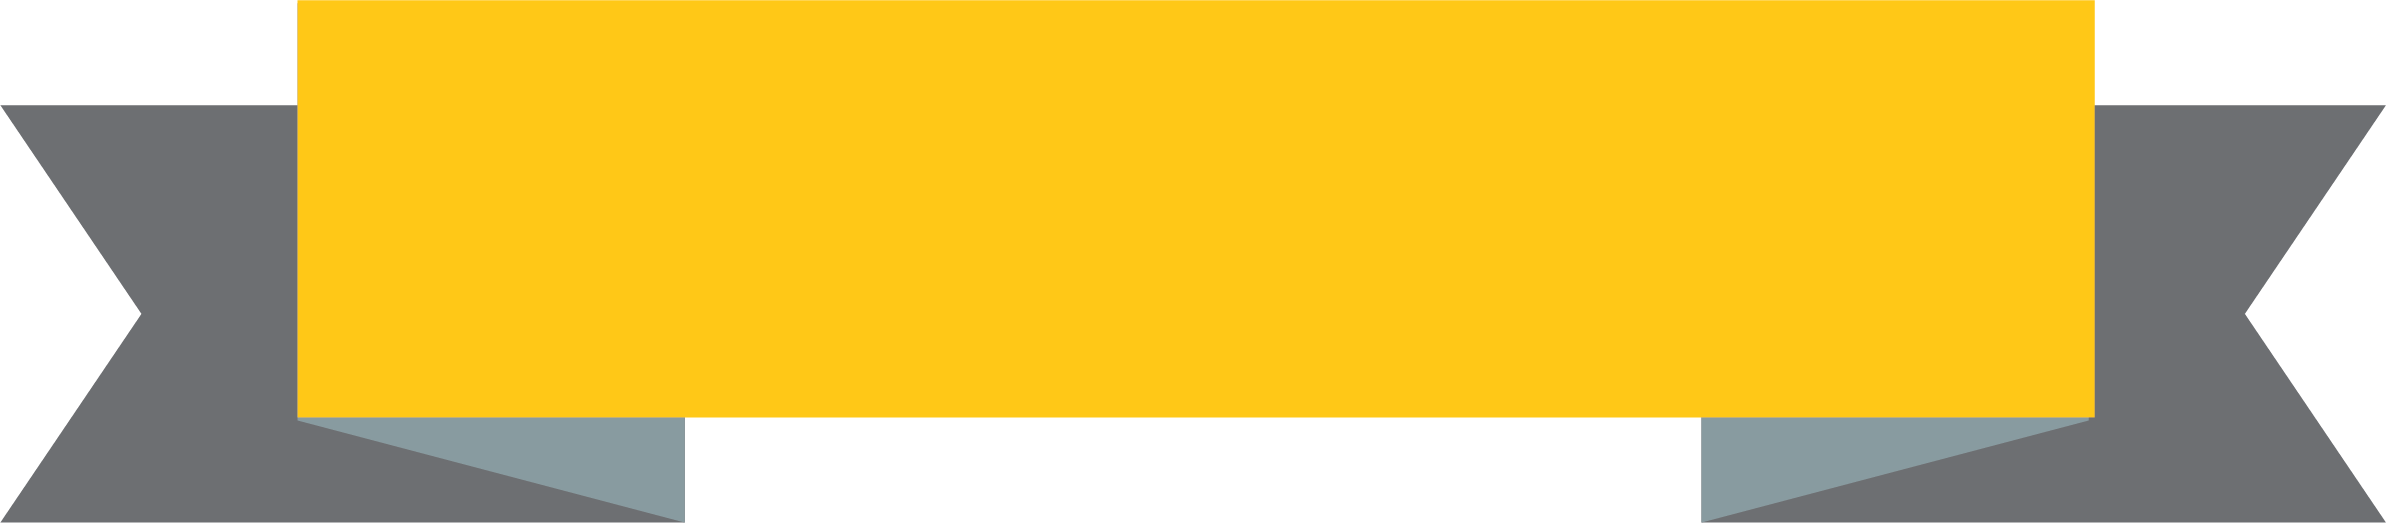 Gelbes Band-PNG-Bild mit transparentem Hintergrund